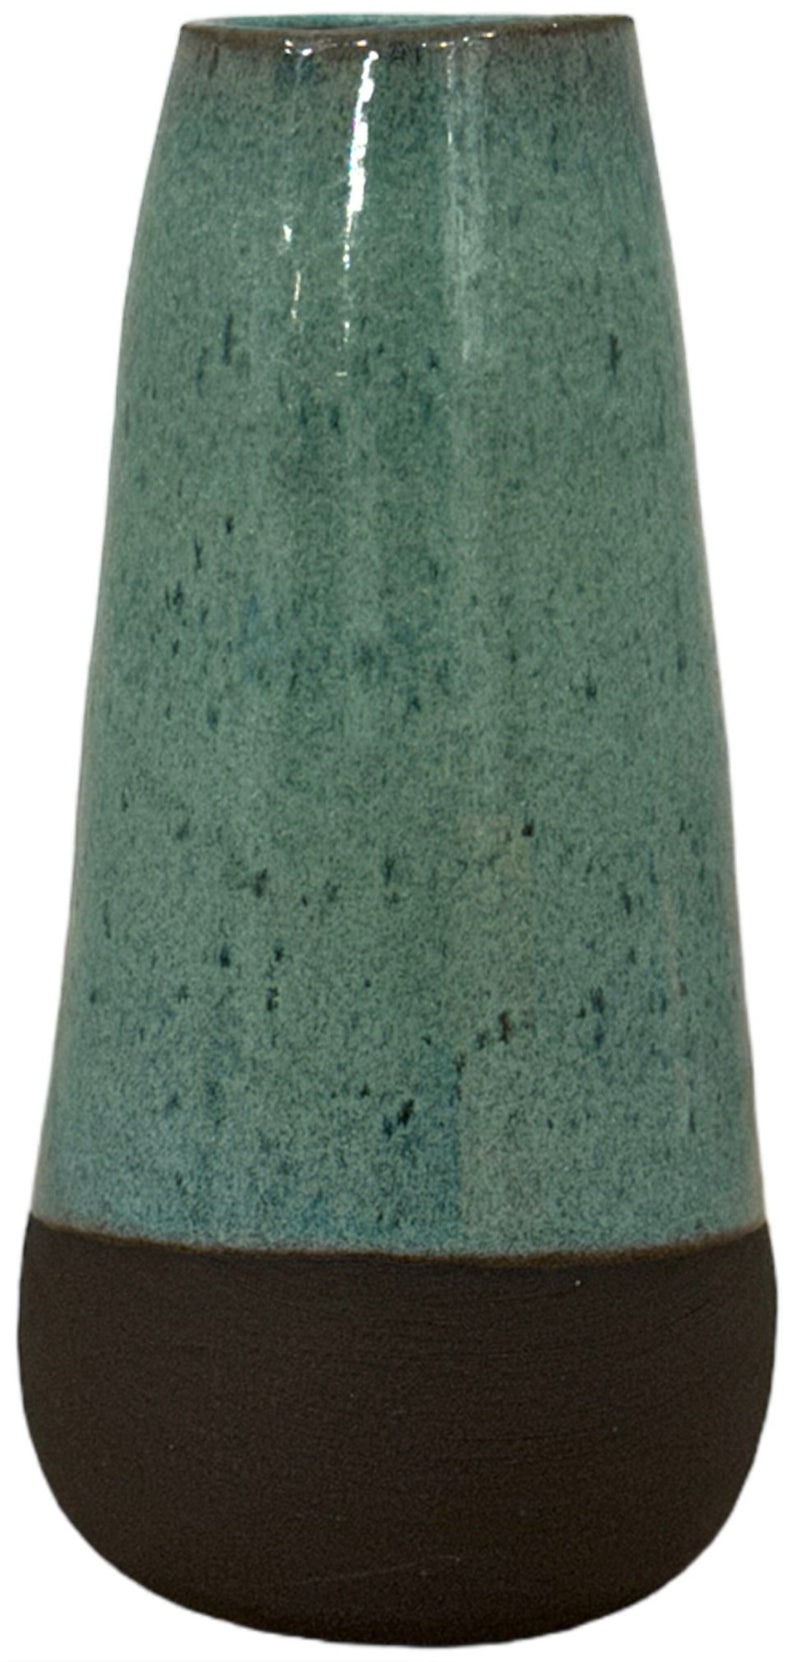 Ceramic Vase (large)